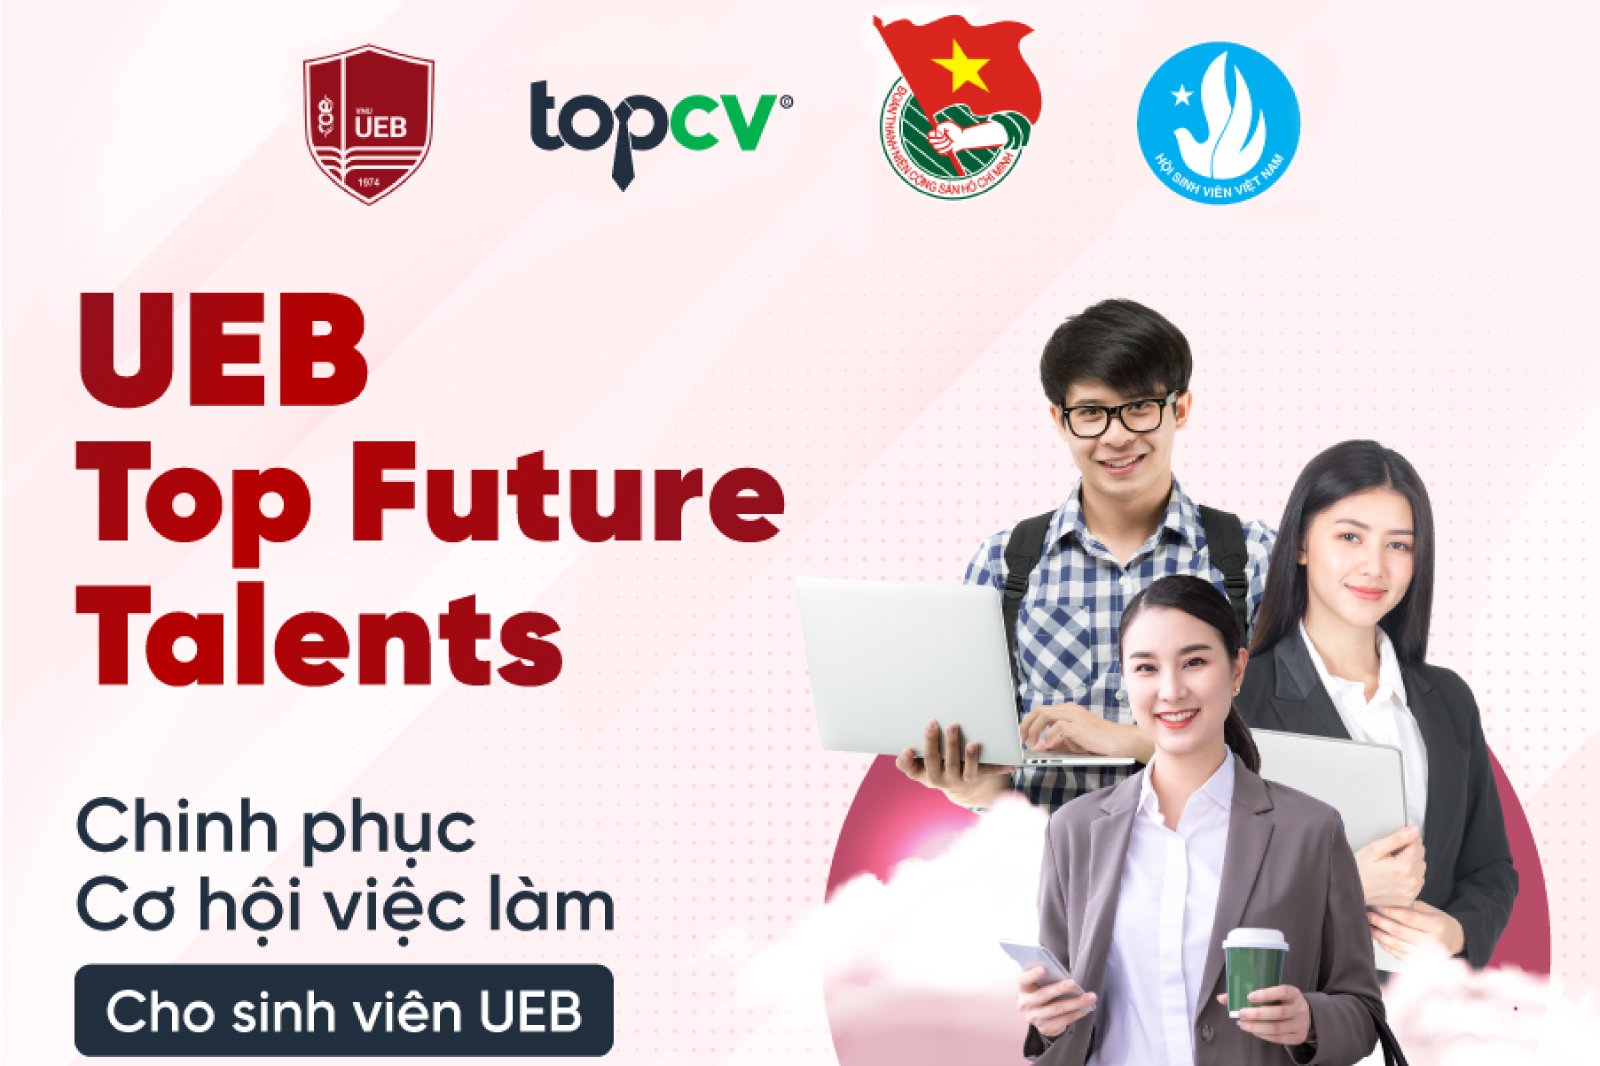 UEB Top Future Talents chính thức mở đơn đăng ký